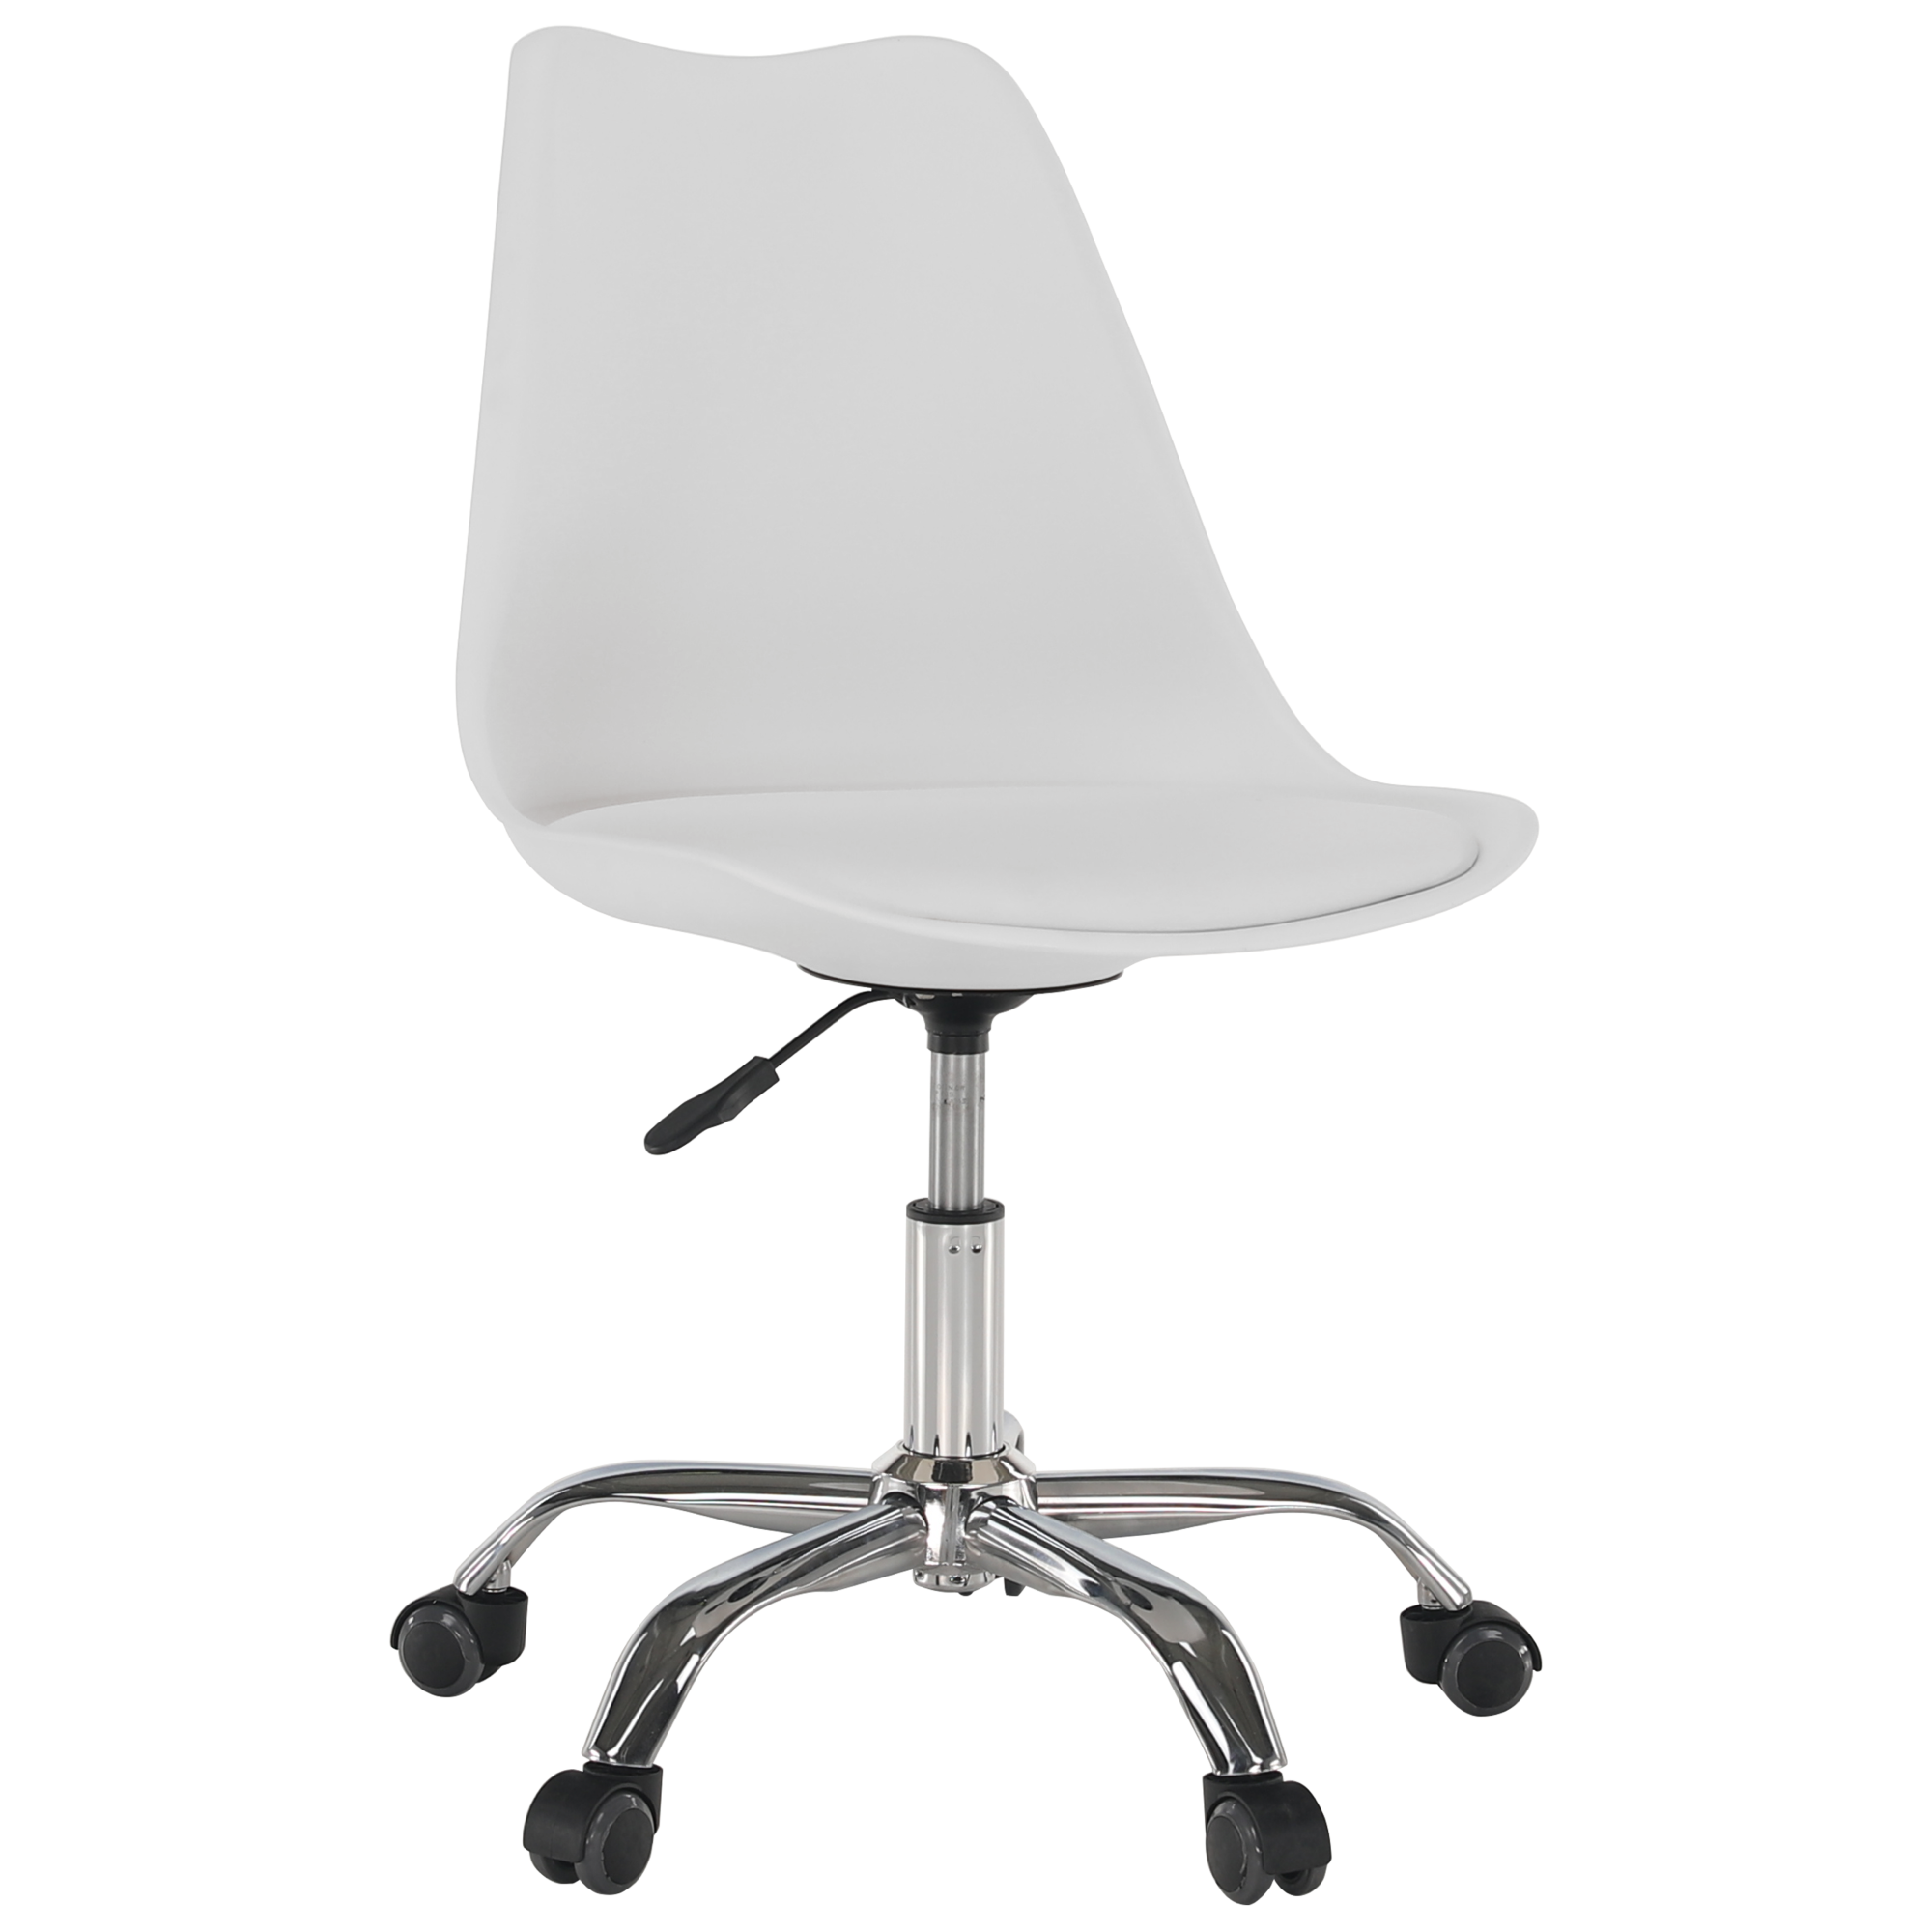 Kancelářská židle DARISA NEW plast a ekokůže bílá, kov chrom